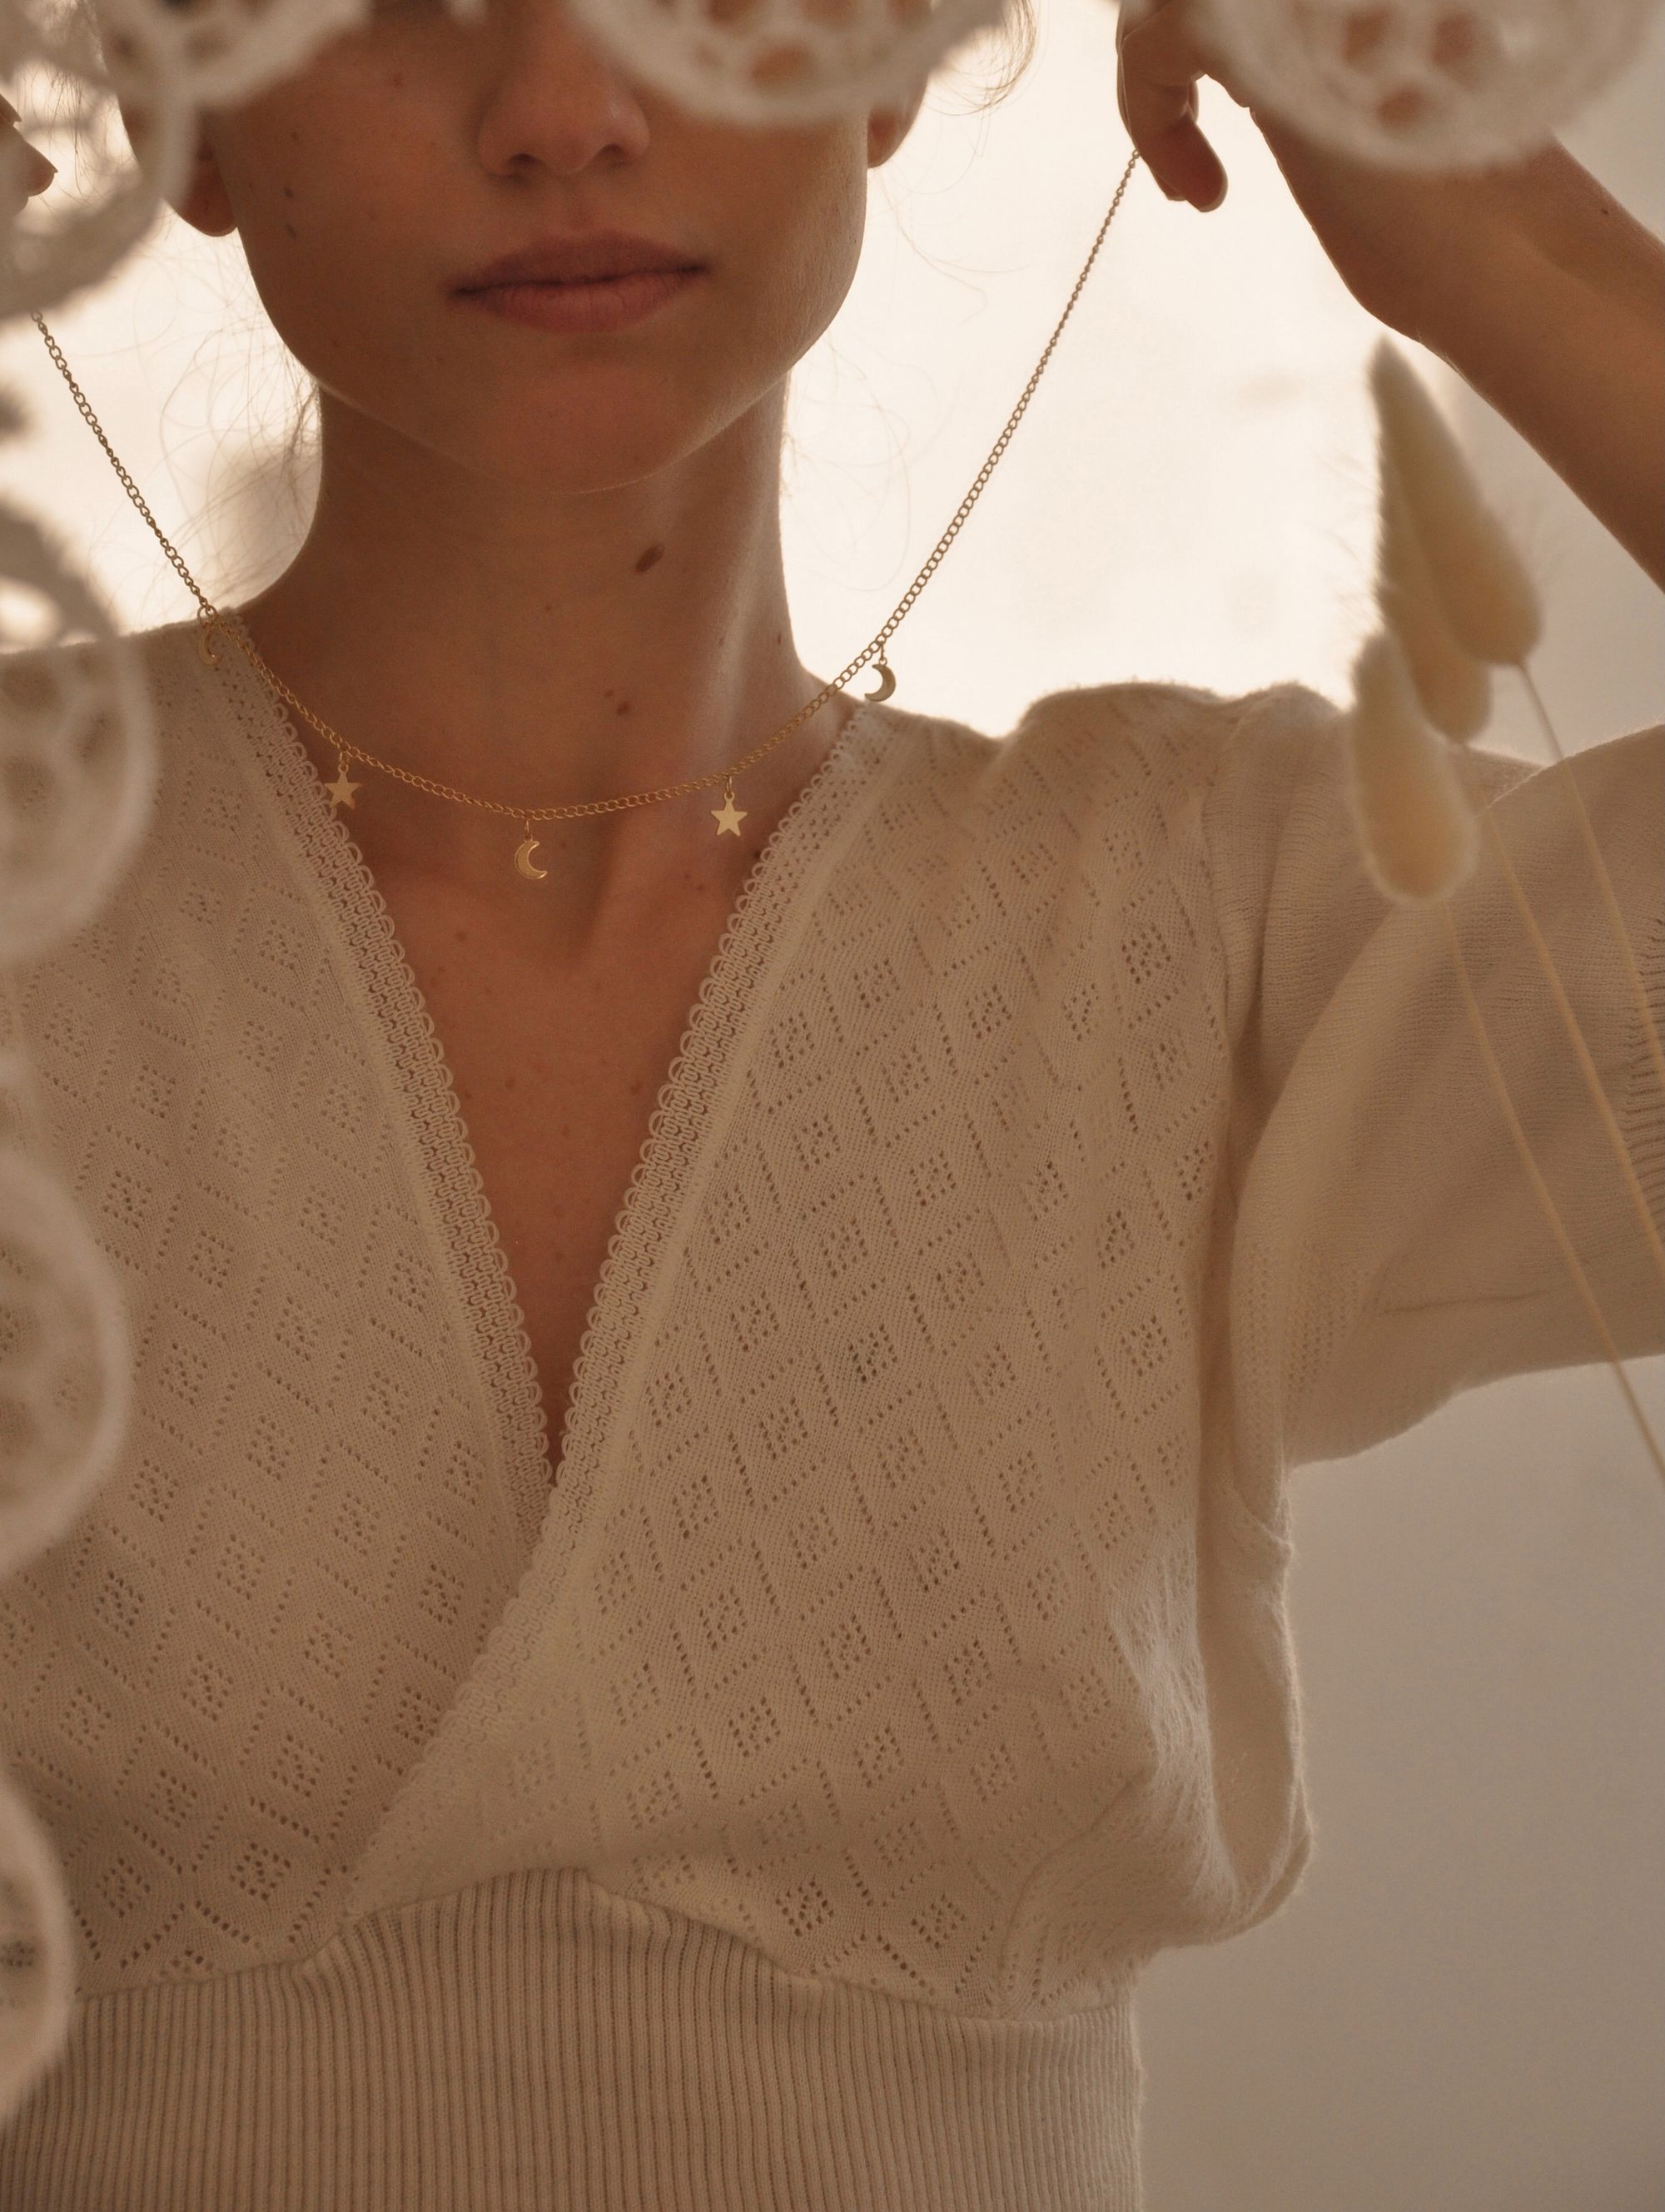 Foto de mulher colocando colar em si mesma.